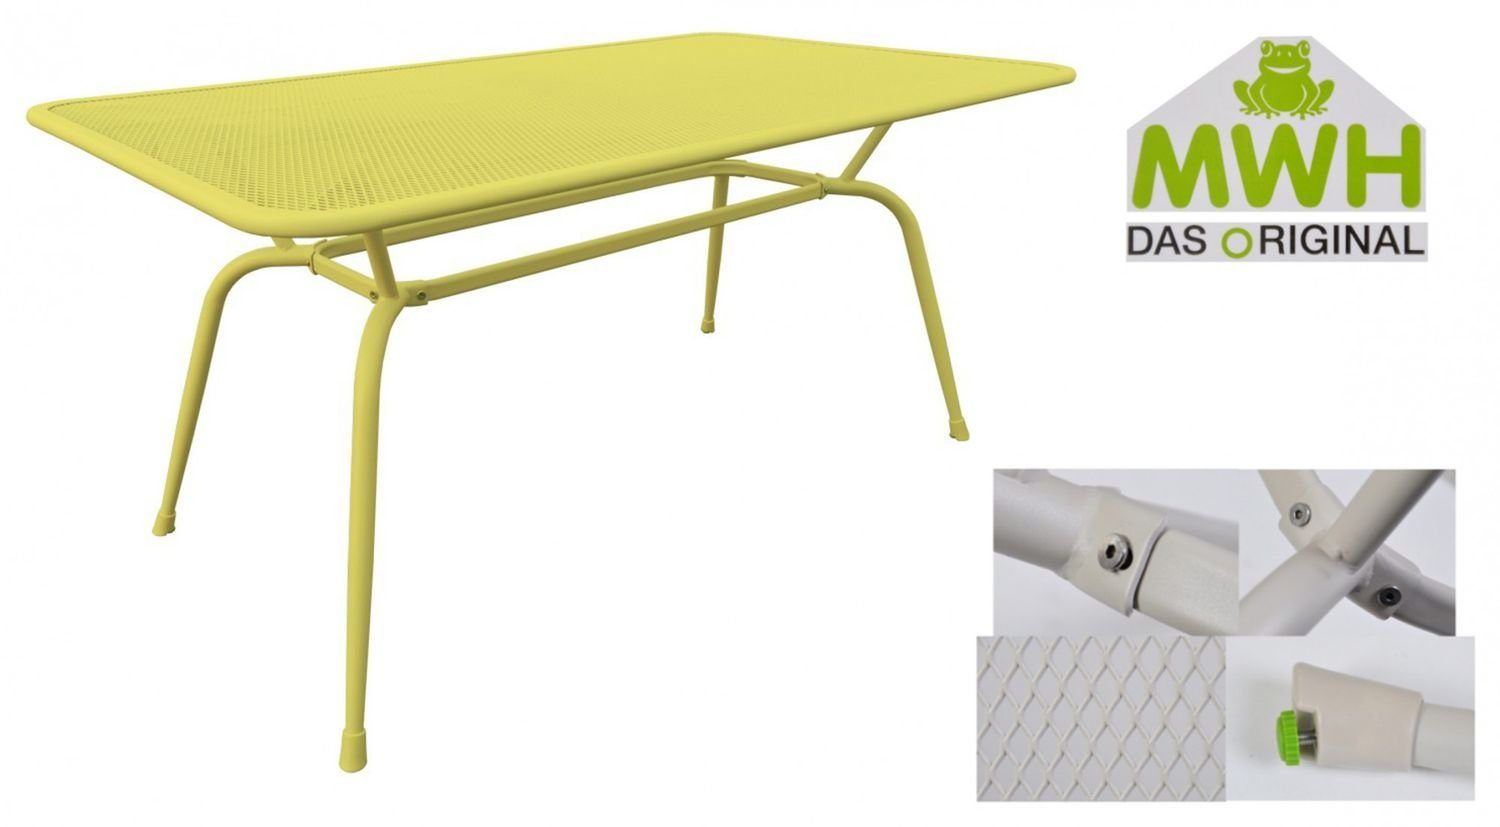 MWH Gartentisch MWH-Tisch Gartentisch Conello 160x90x74cm Streckmetalltisch gelb Tisch